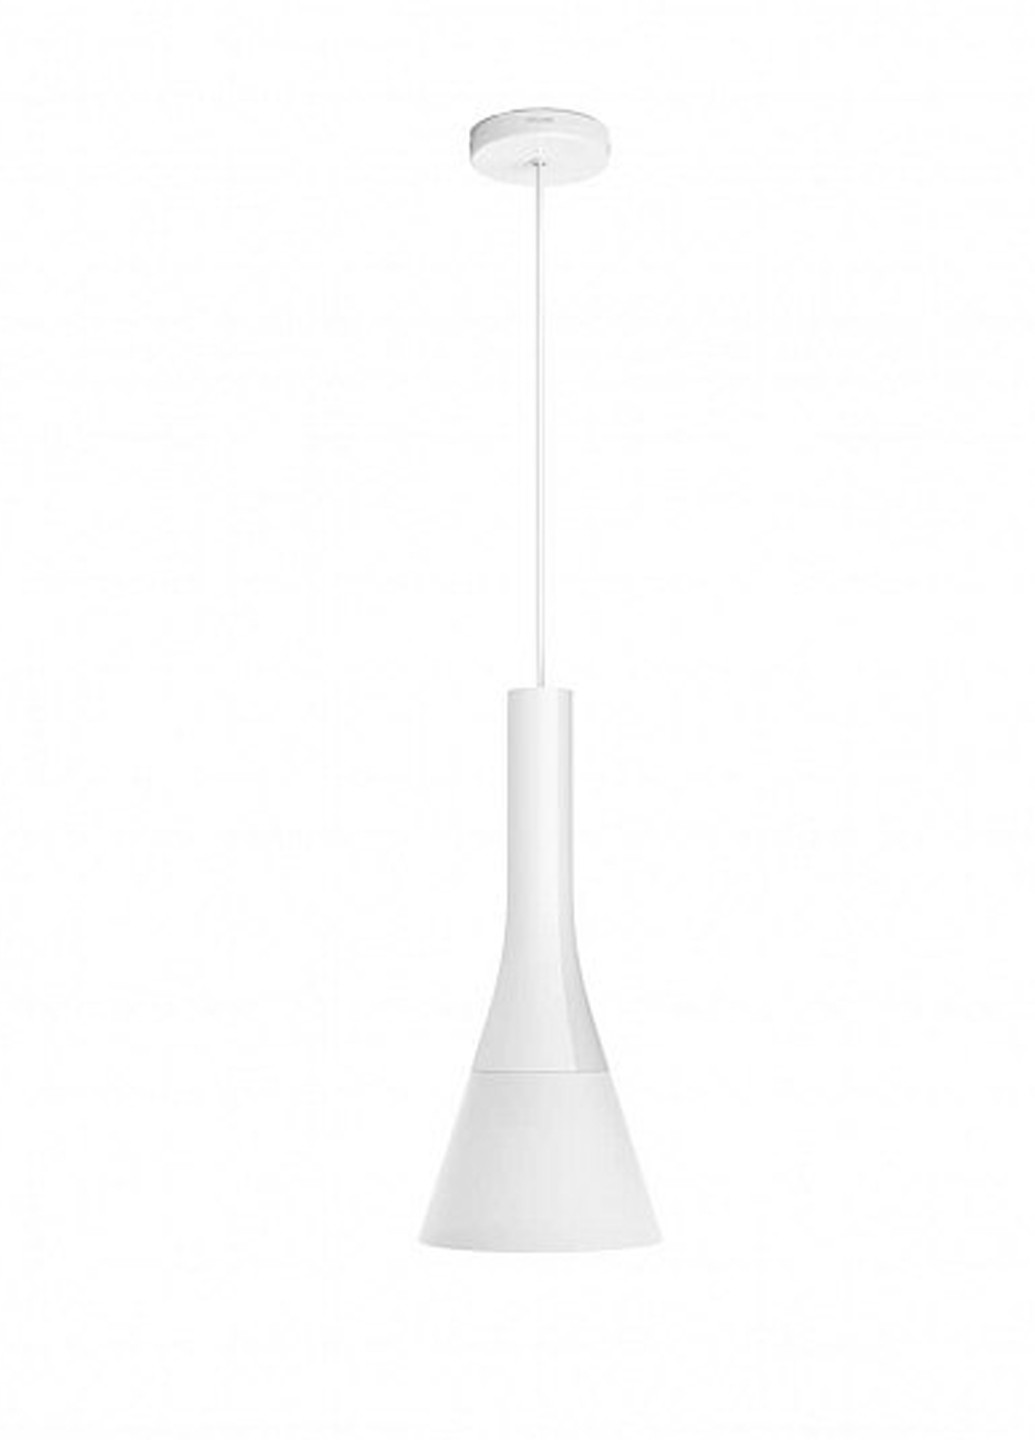 Смарт-світильник Explore Hue pendant white 1x9.5W 230V (43001/31 / P7) Philips смарт explore hue pendant white 1x9.5w 230v (43001/31/p7) (142289737)